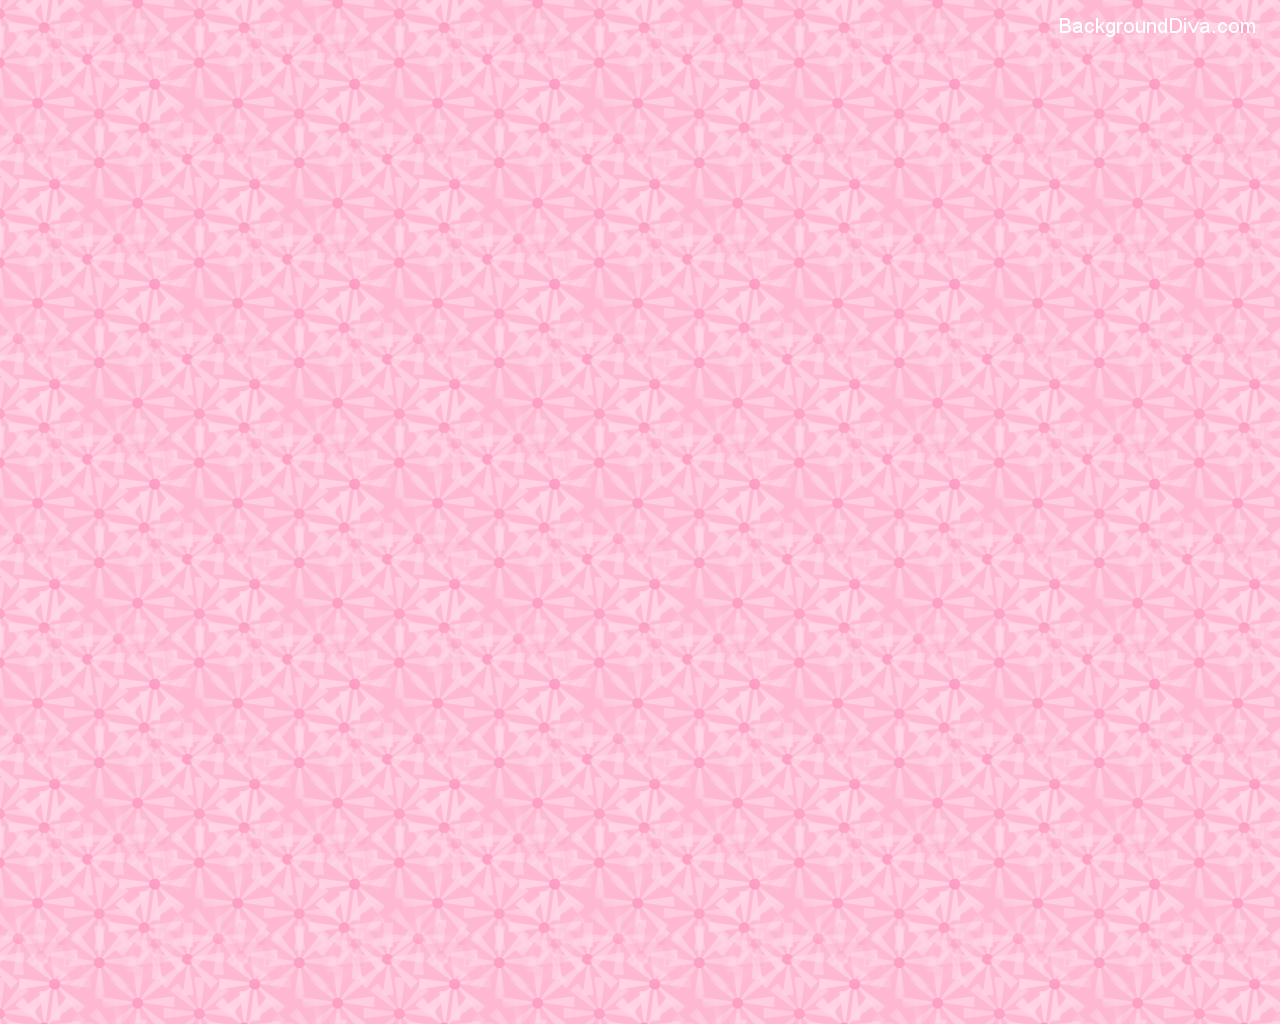 Light Pink Wallpaper. 1280x1024. Light Pink Background Designs